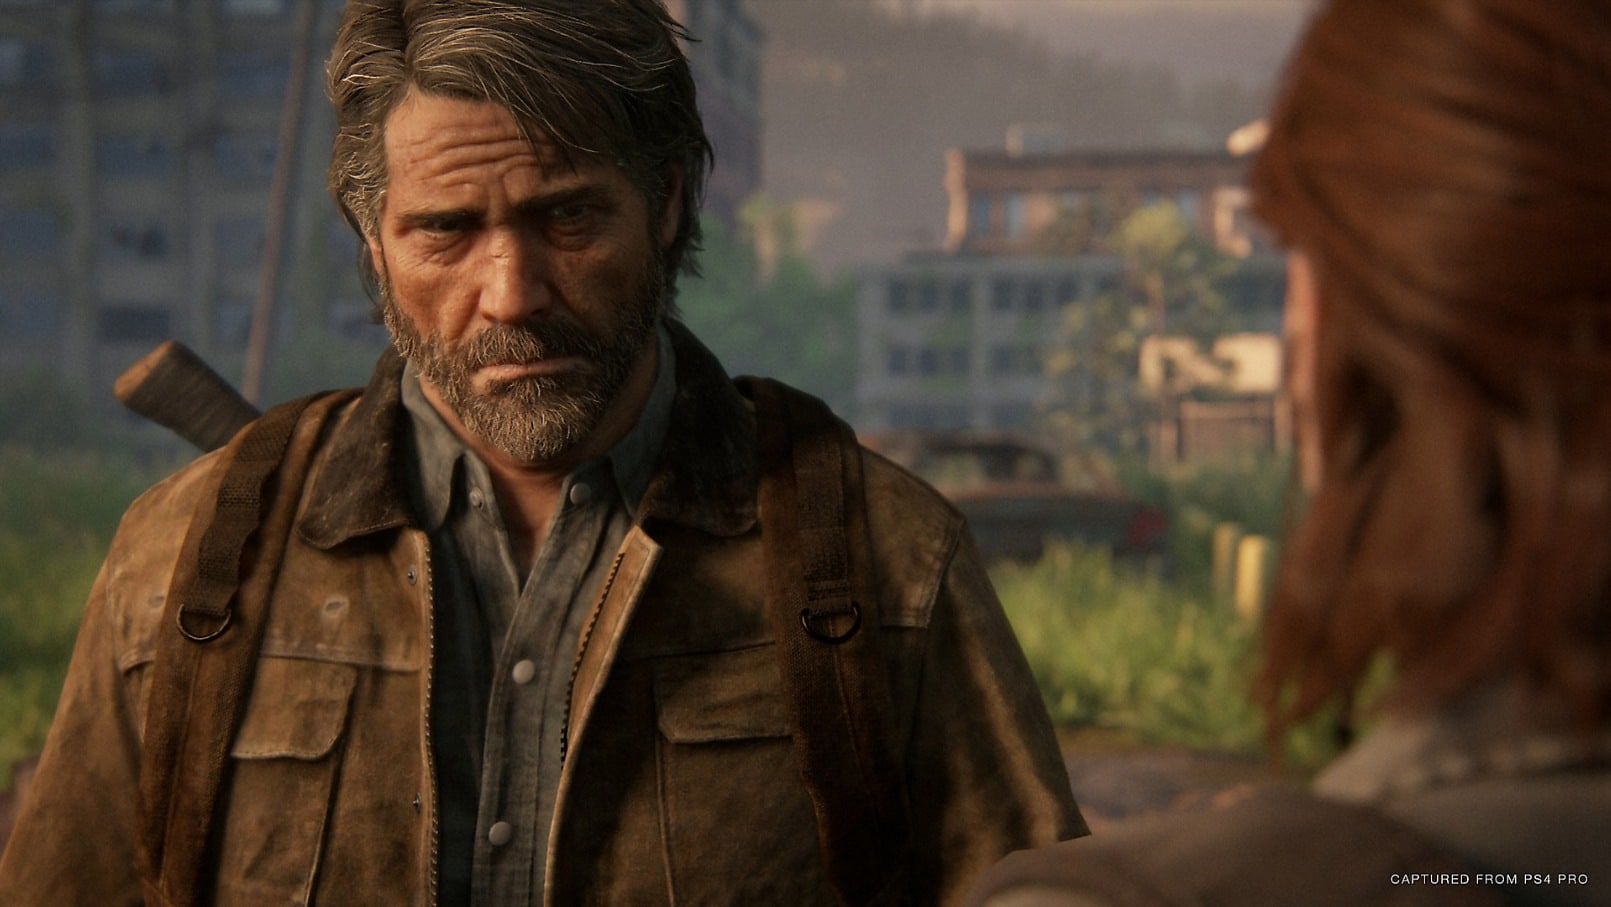 Joel und Ellie. The Last of Us 2 konzentriert sich auf die Geschichte der beiden Protagonisten aus dem ersten Spiel.